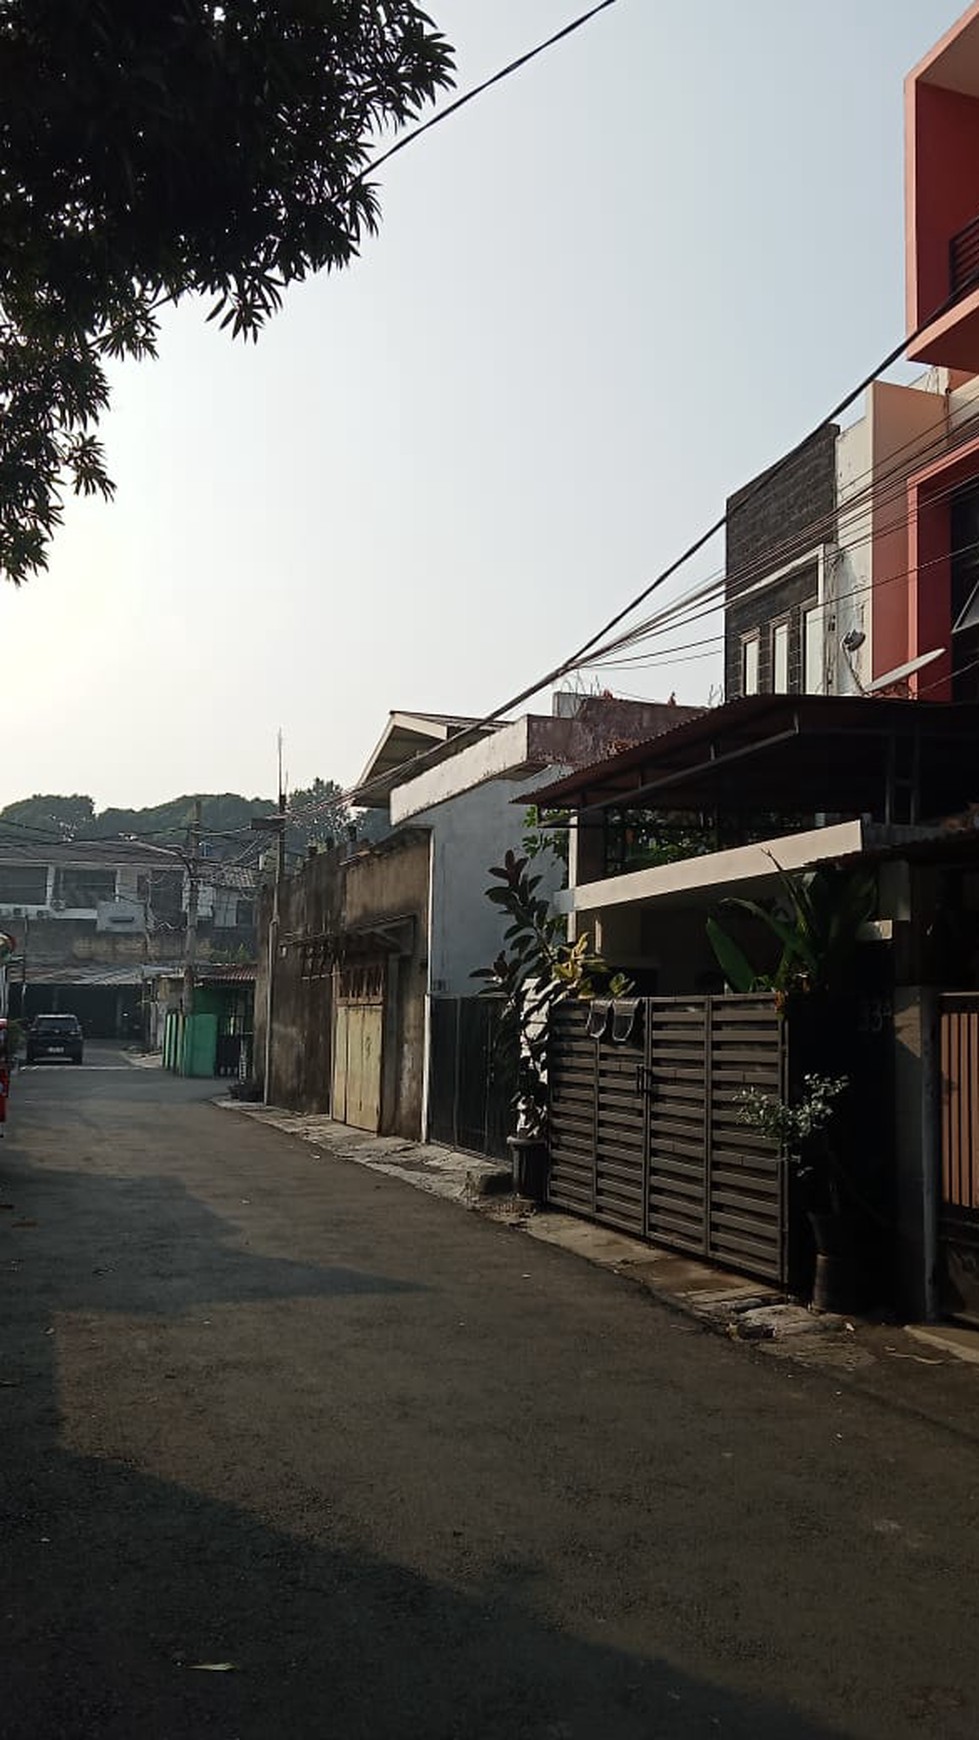 DIJUAL RUMAH TINGGAL di Jl. Deltasari Radio dalam (msk dr Tmn Radio Dalam)  Kel. Gandaria Utara Kec. Kebayoran Baru Jakarta Selatan. 